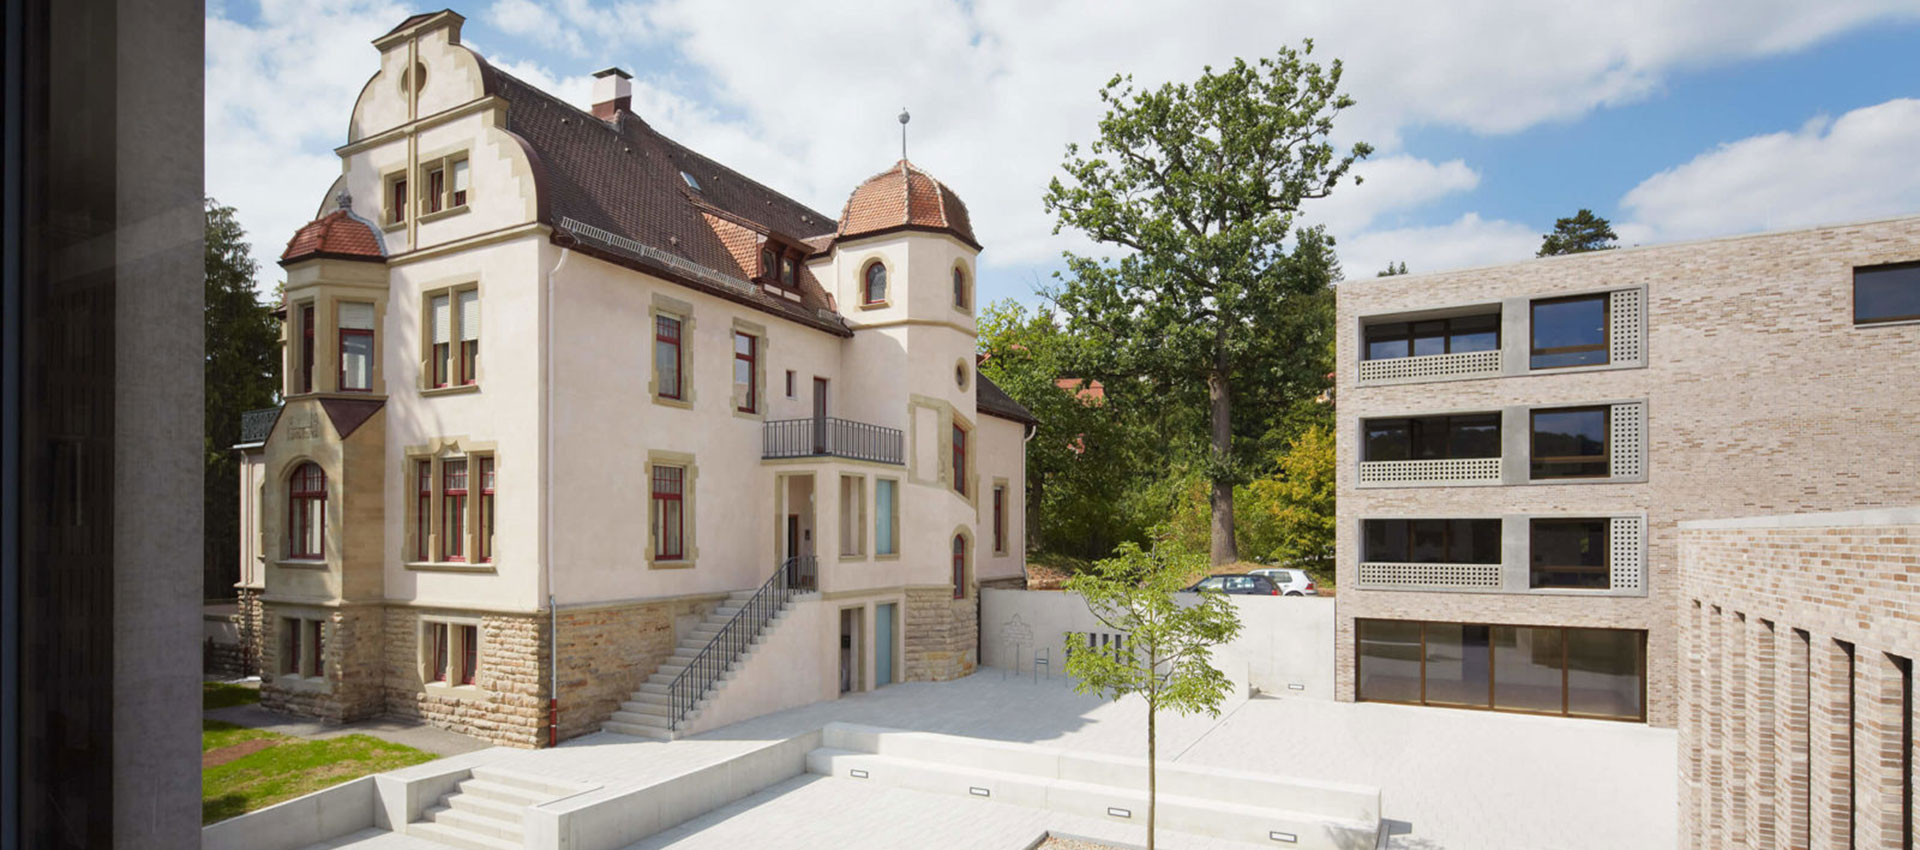 Villa Bruns in Tübingen